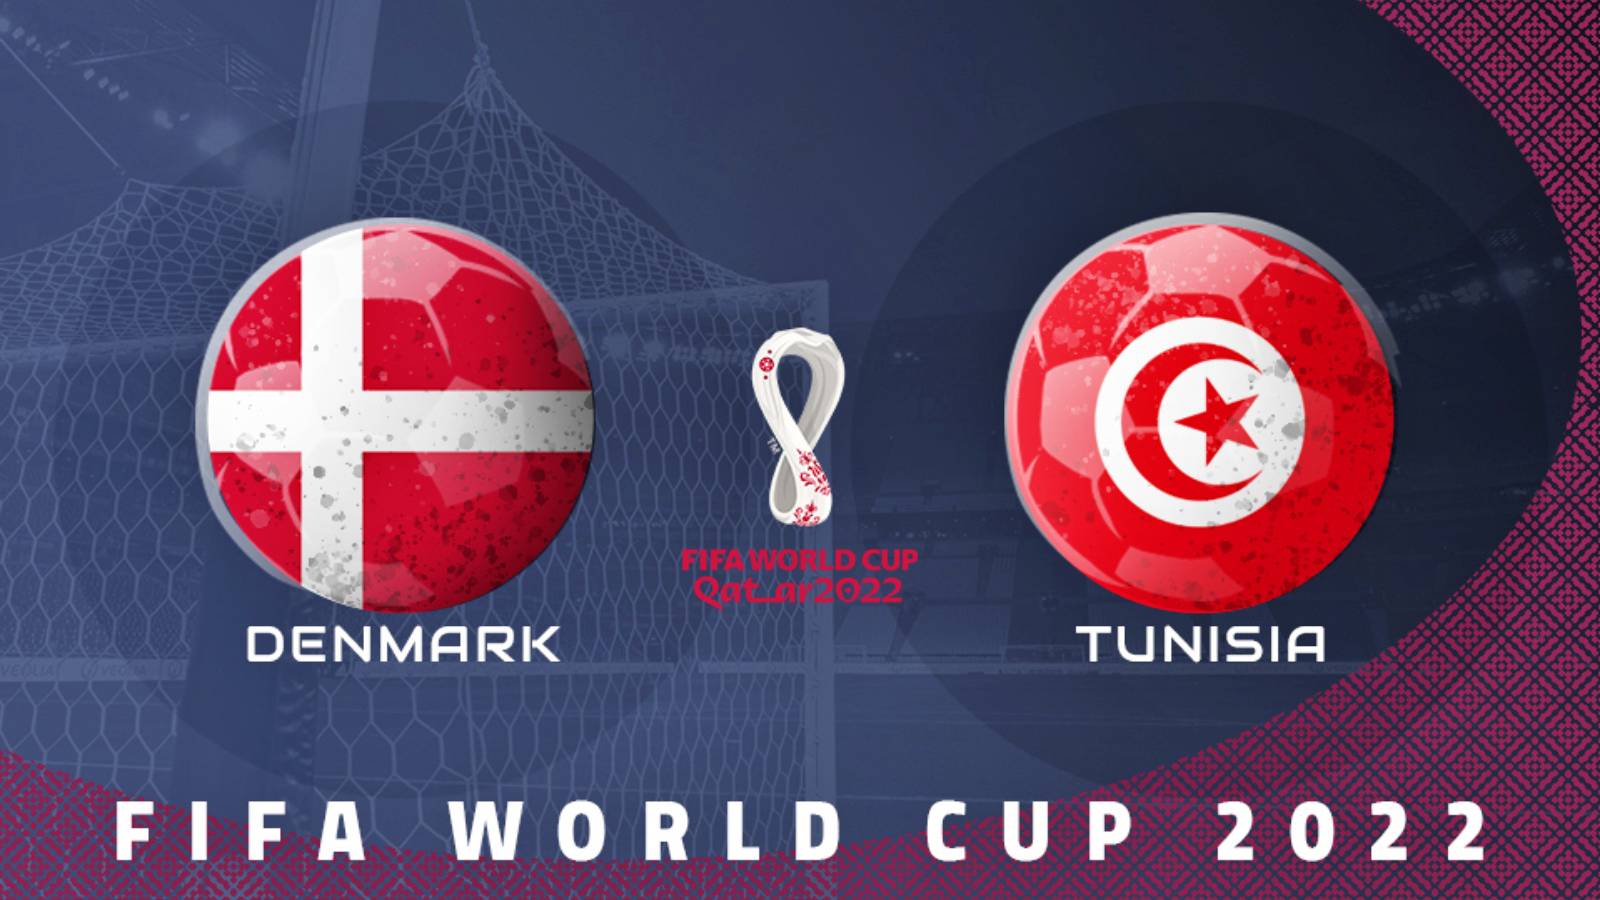 DANIMARCA – TUNISIA TVR 1 LIVE MATCH COPPA DEL MONDO 2022 QATAR